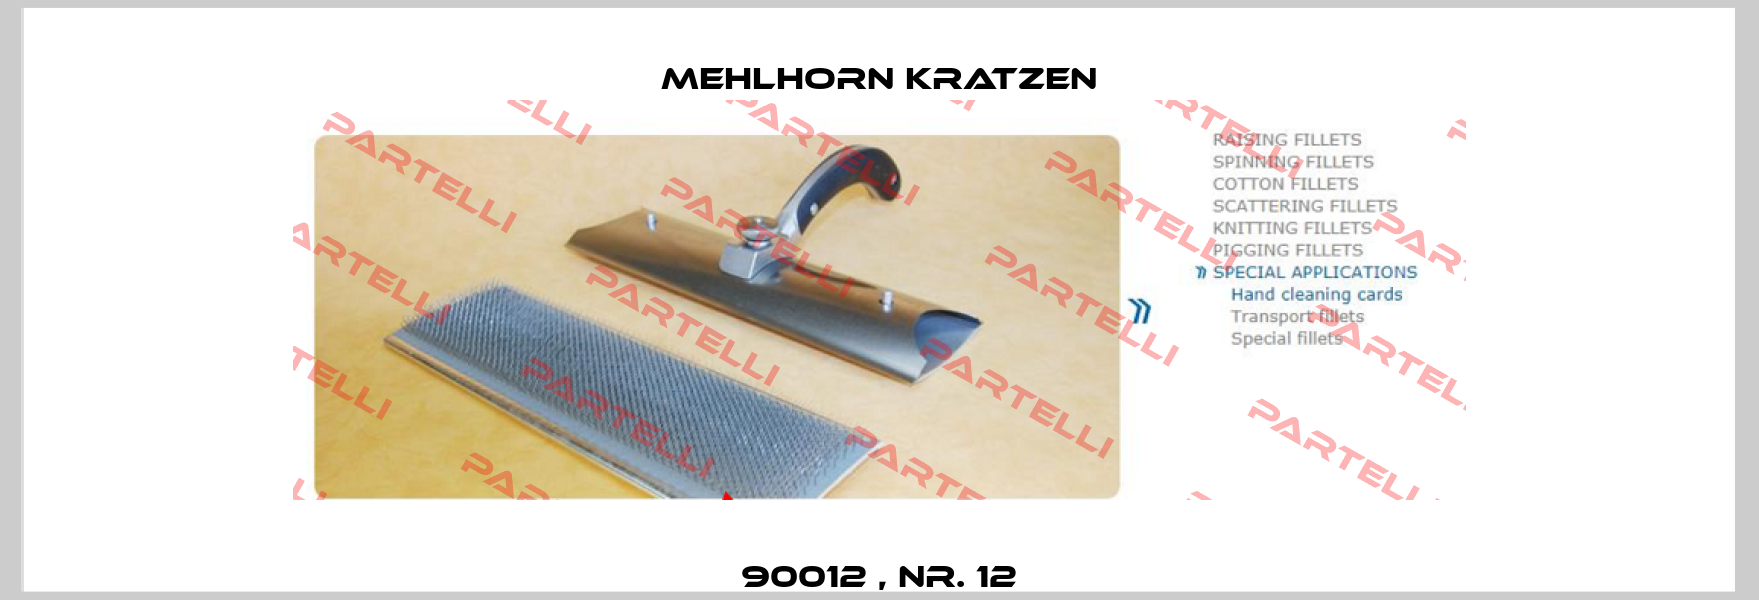 90012 , Nr. 12 Mehlhorn Kratzen